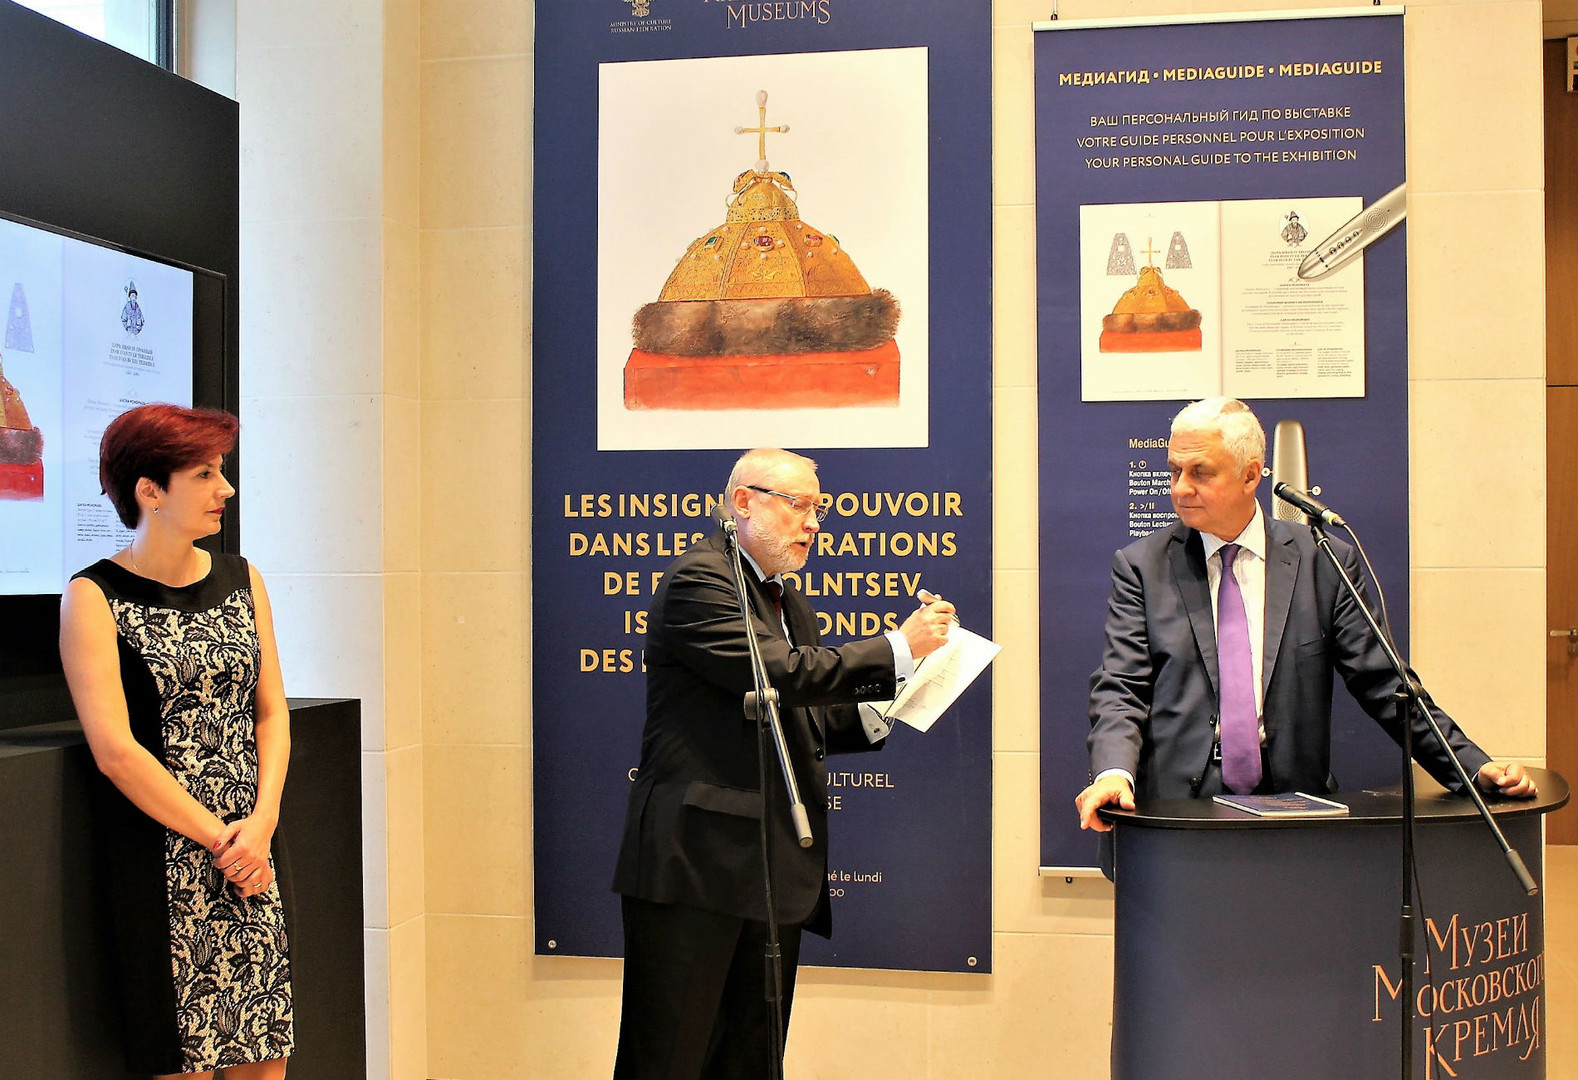 Ouverture de l'exposition par l'ambassadeur de Russie en France Alexandre Orlov, les représentants de l'édition Medialibr (concepteur du visite interactif) et des Musées du Kremlin de Moscou.